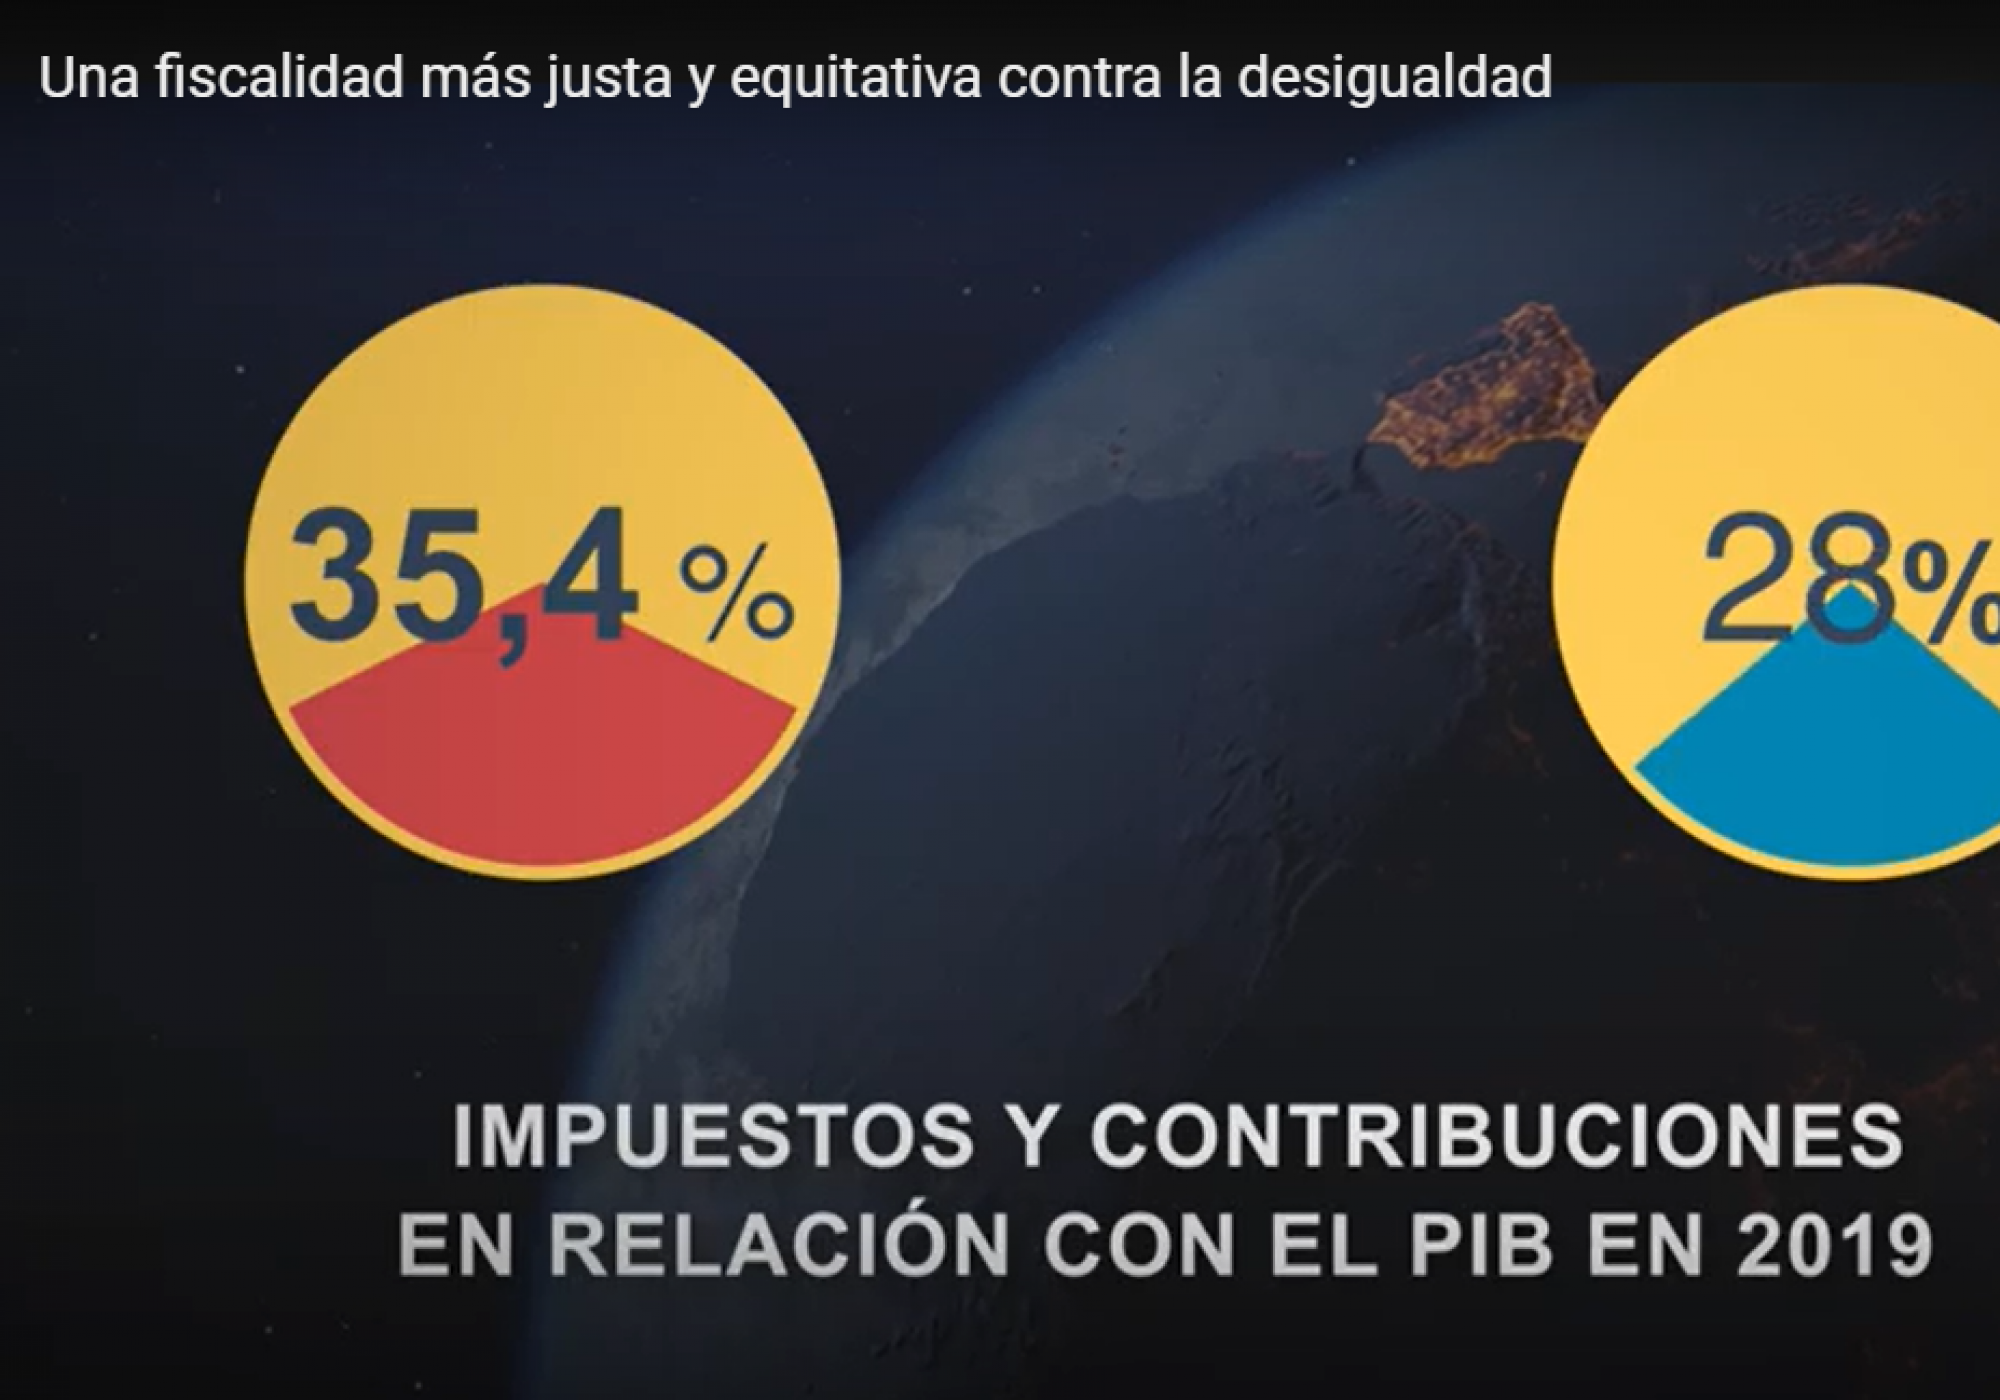 VÍDEO - Una fiscalidad más justa y equitativa contra la desigualdad, con EAPN España